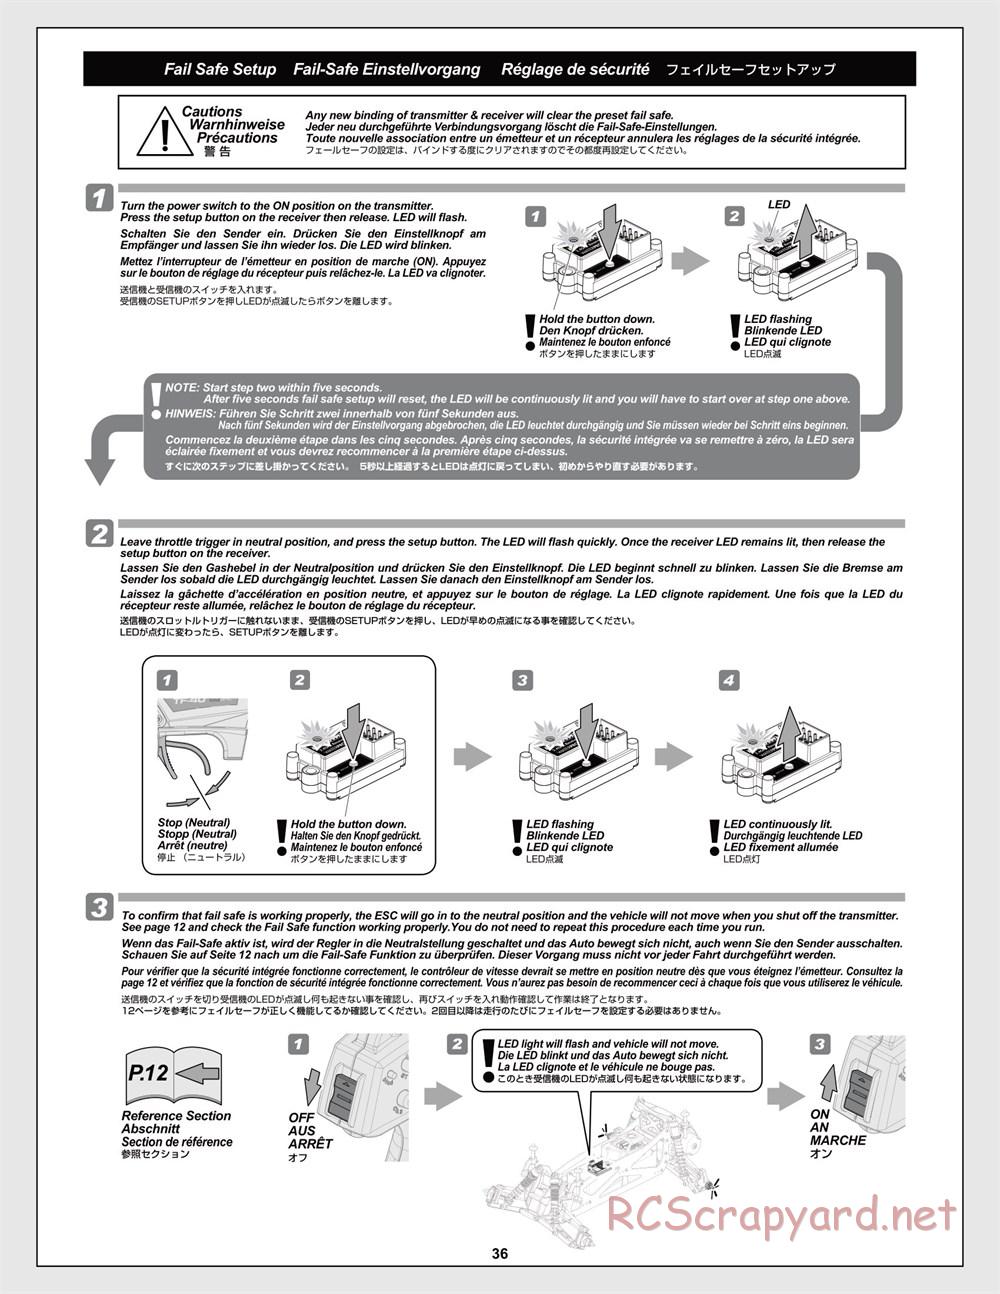 HPI - Jumpshot MT Flux - Manual - Page 36